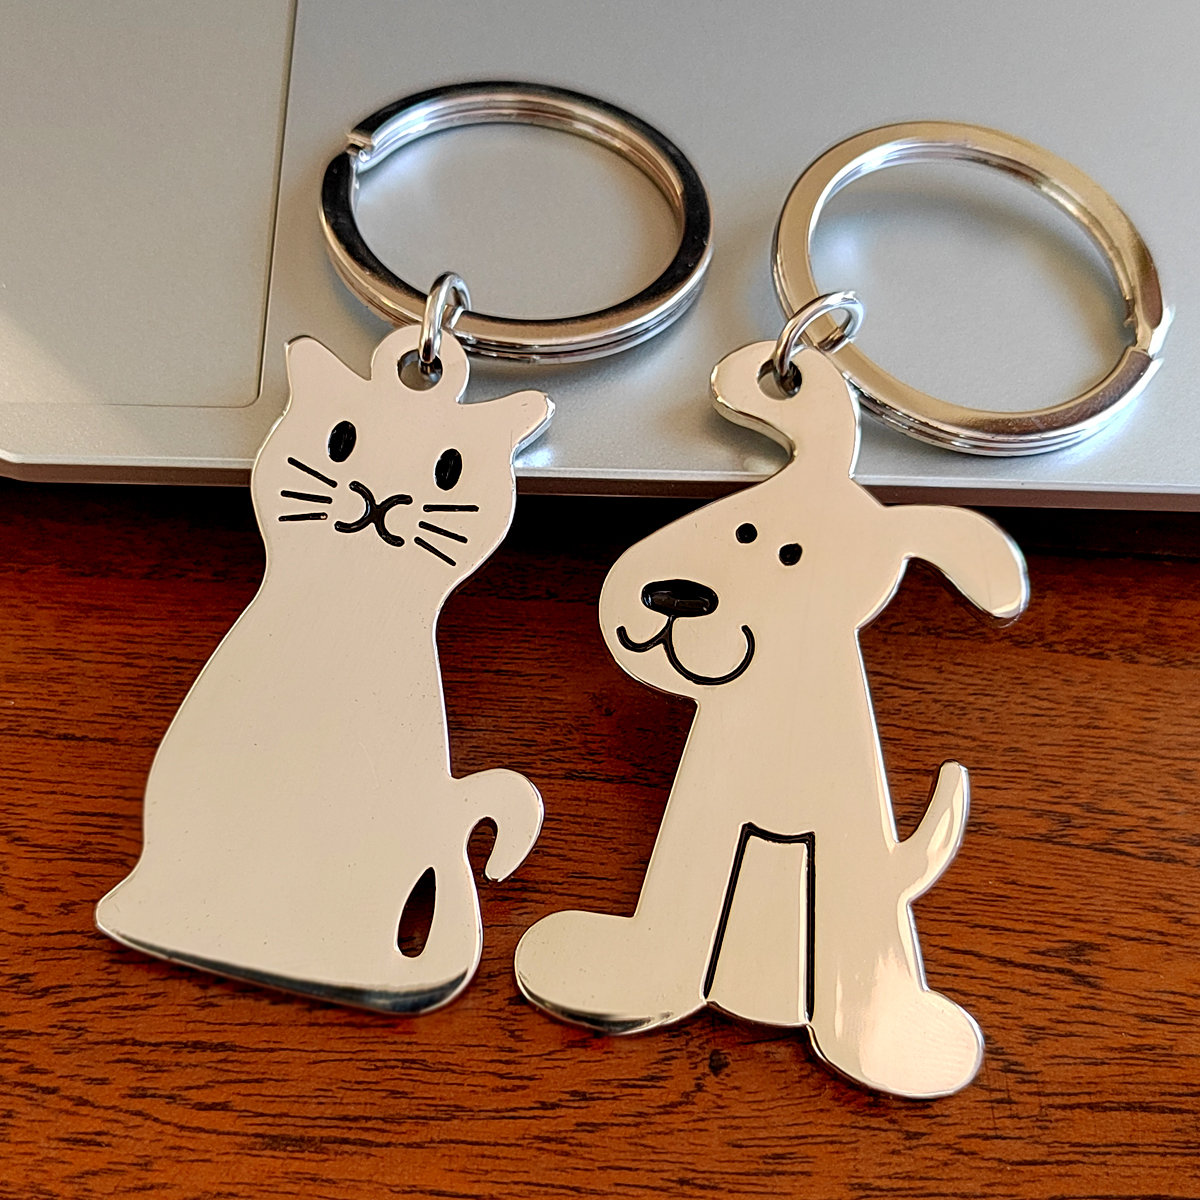 猫狗宠物钥匙扣合金卡通系列金属钥匙链礼物礼品免费刻字定制logo